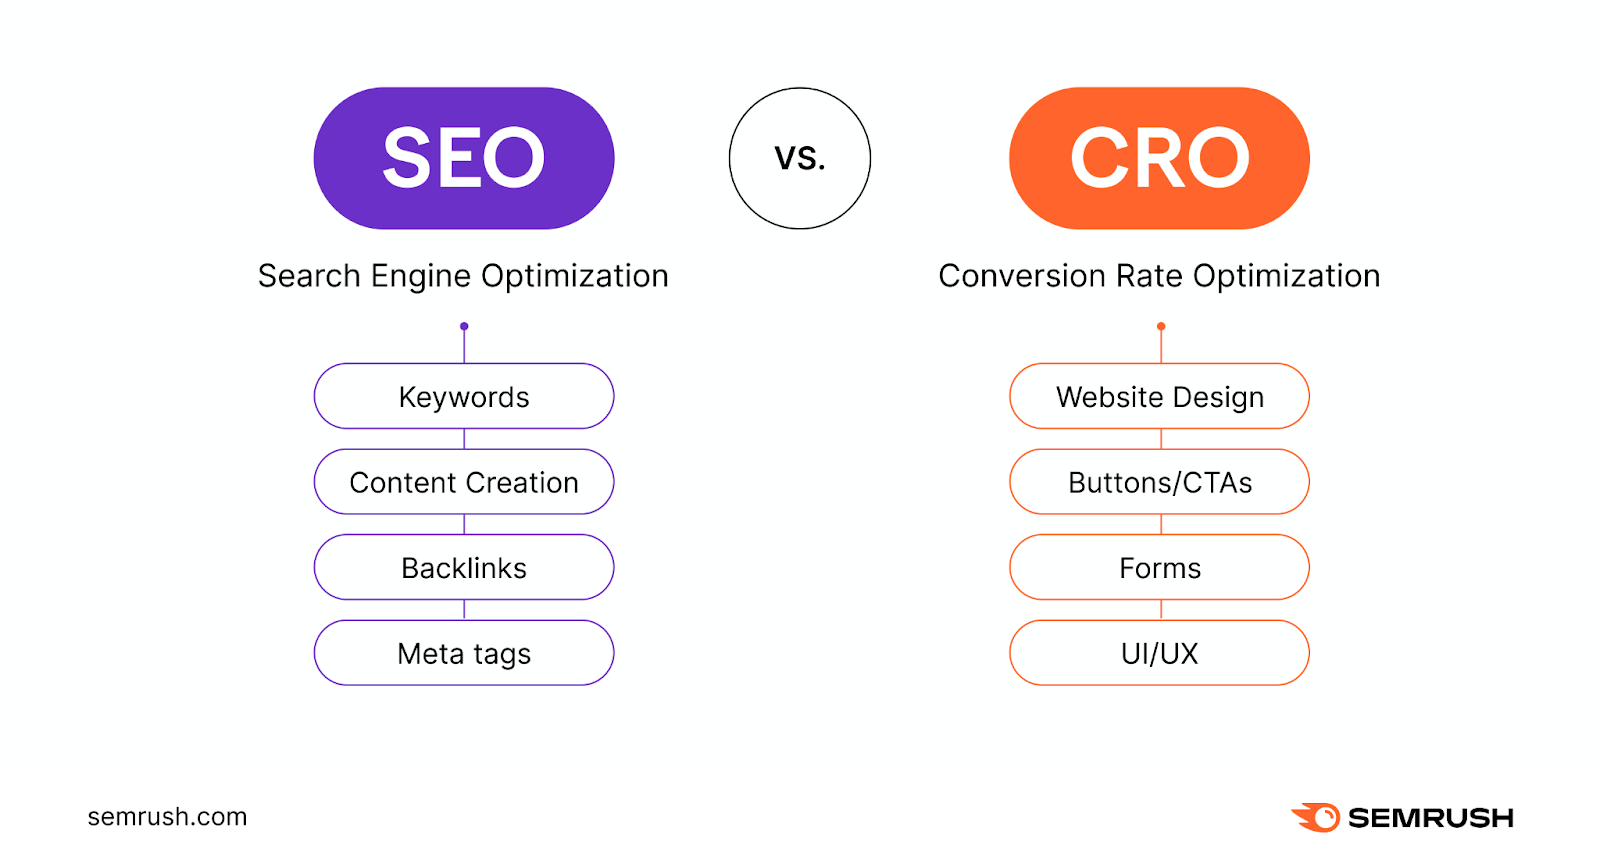 Search engine optimization (SEO) vs conversion rate optimization (CRO)